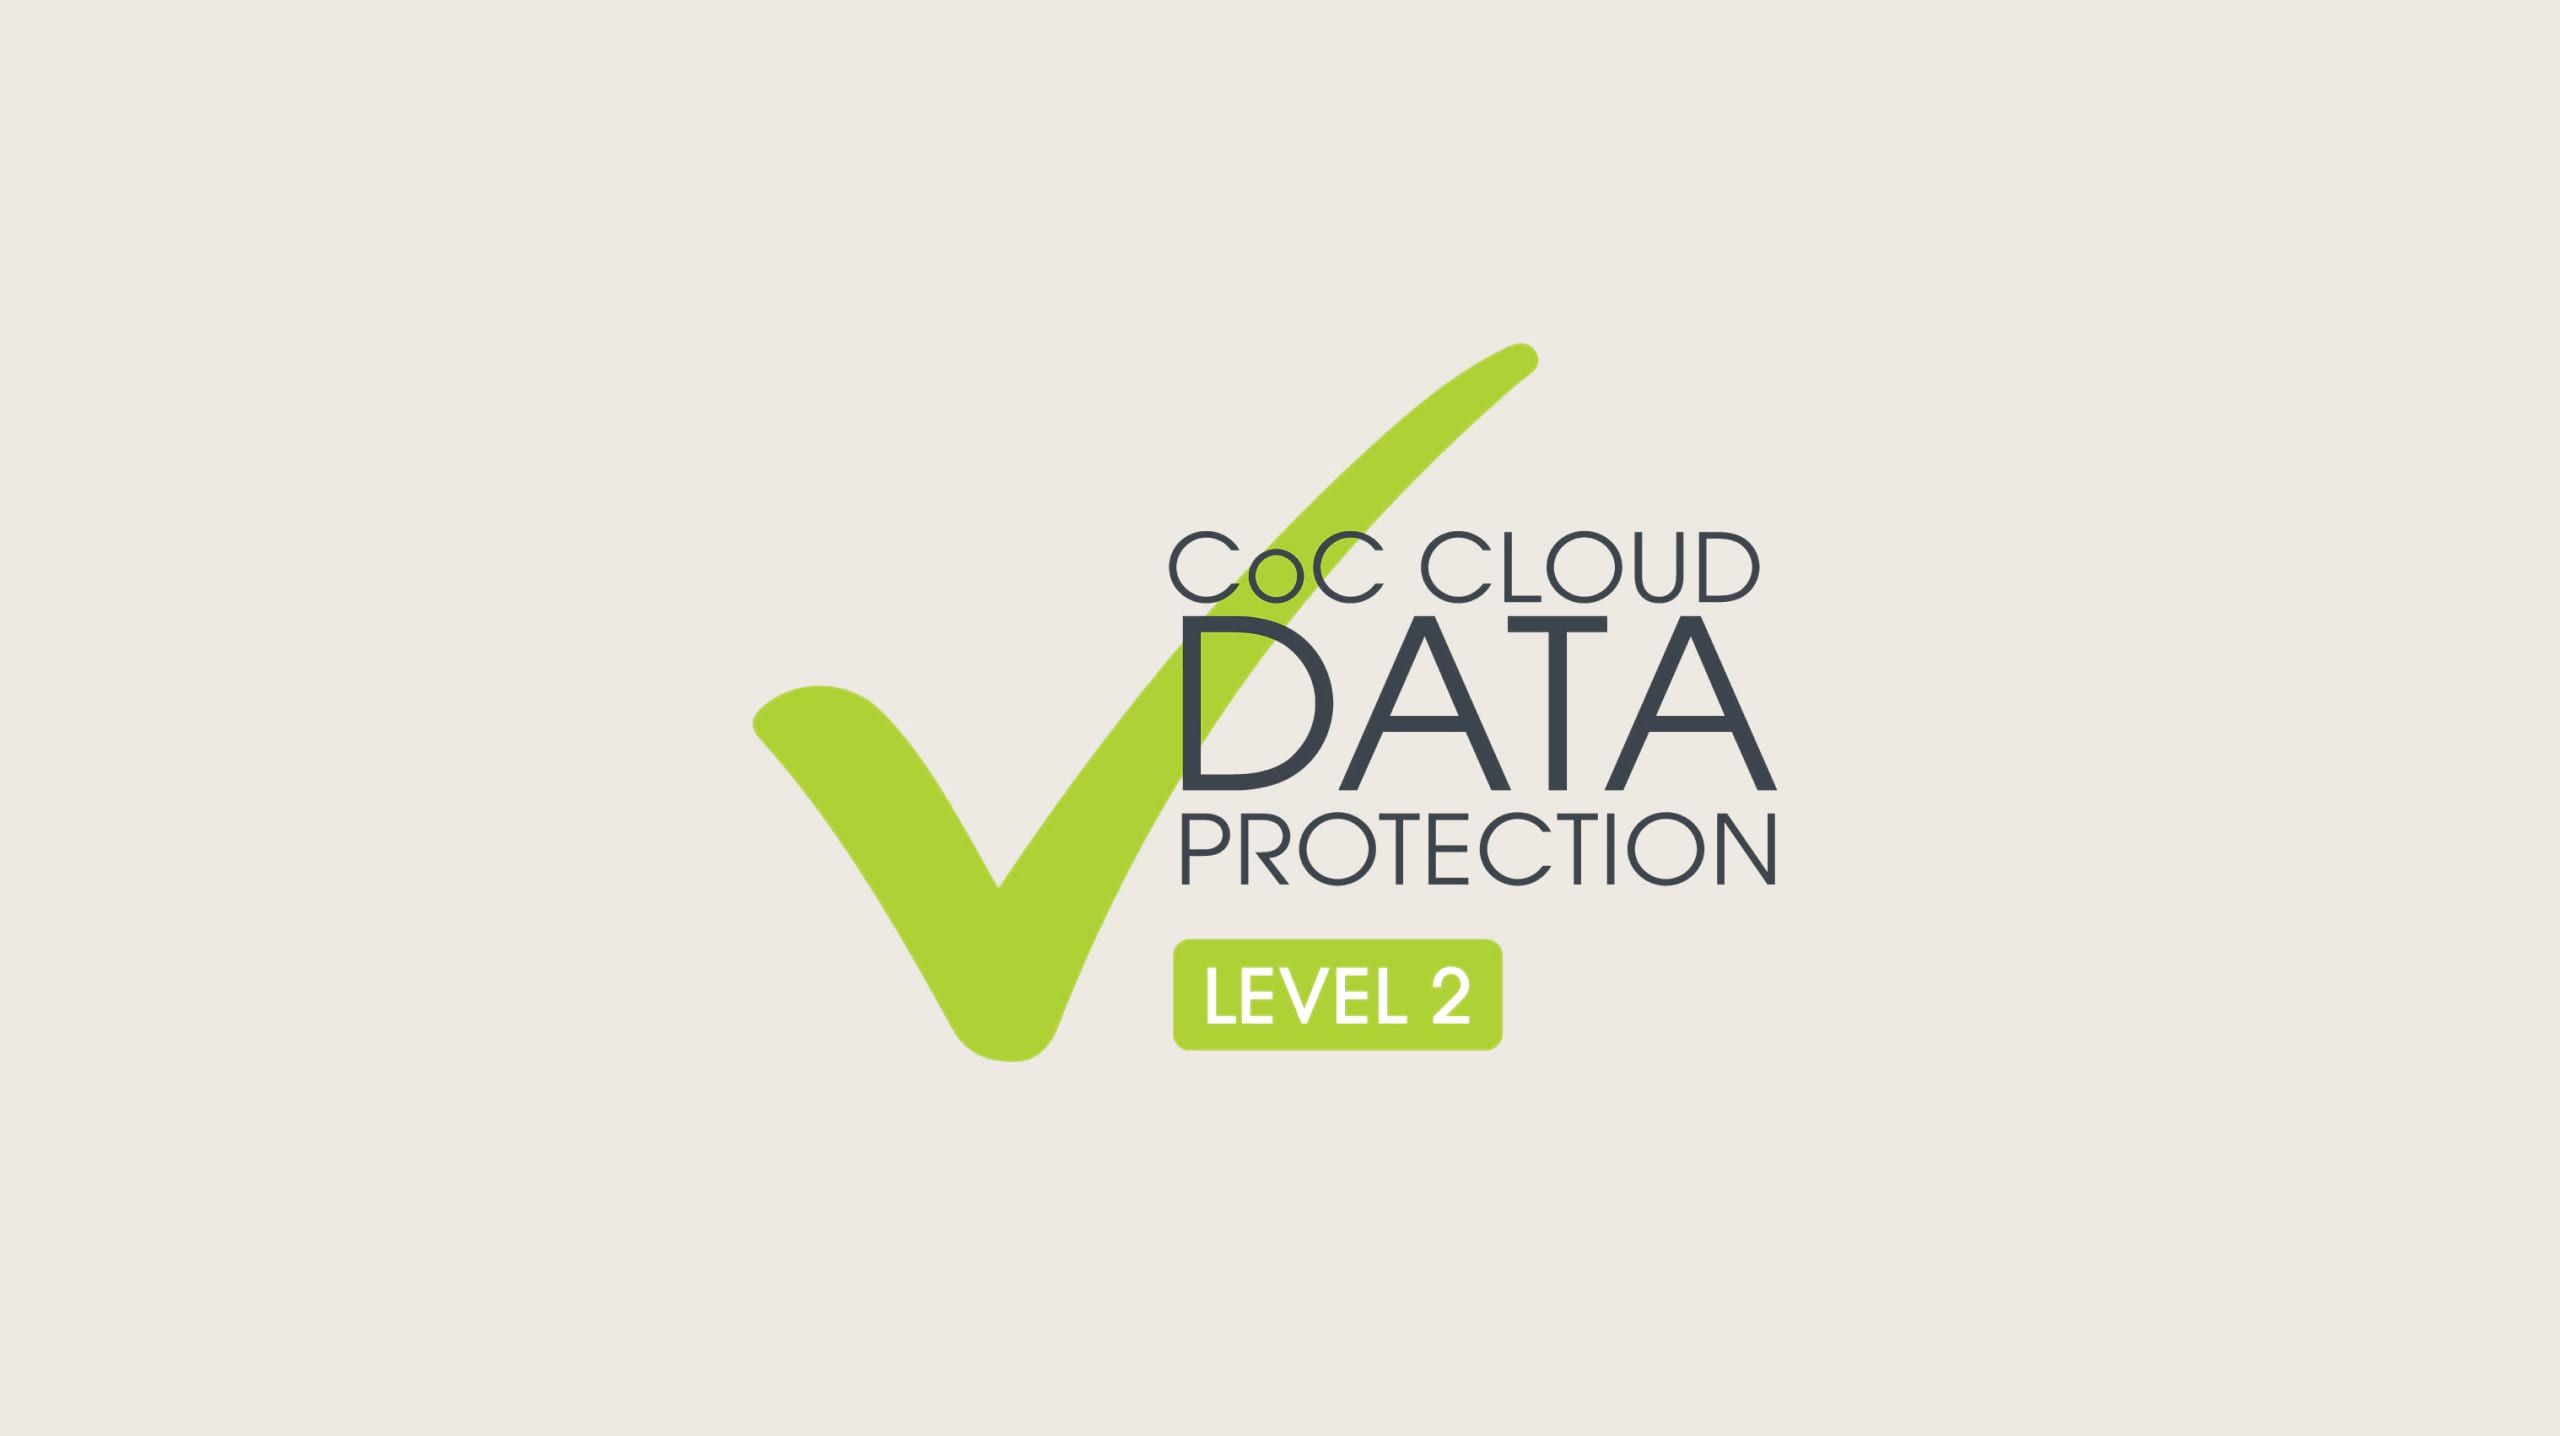 雲端資料保護行為準則「第 2 級」標誌